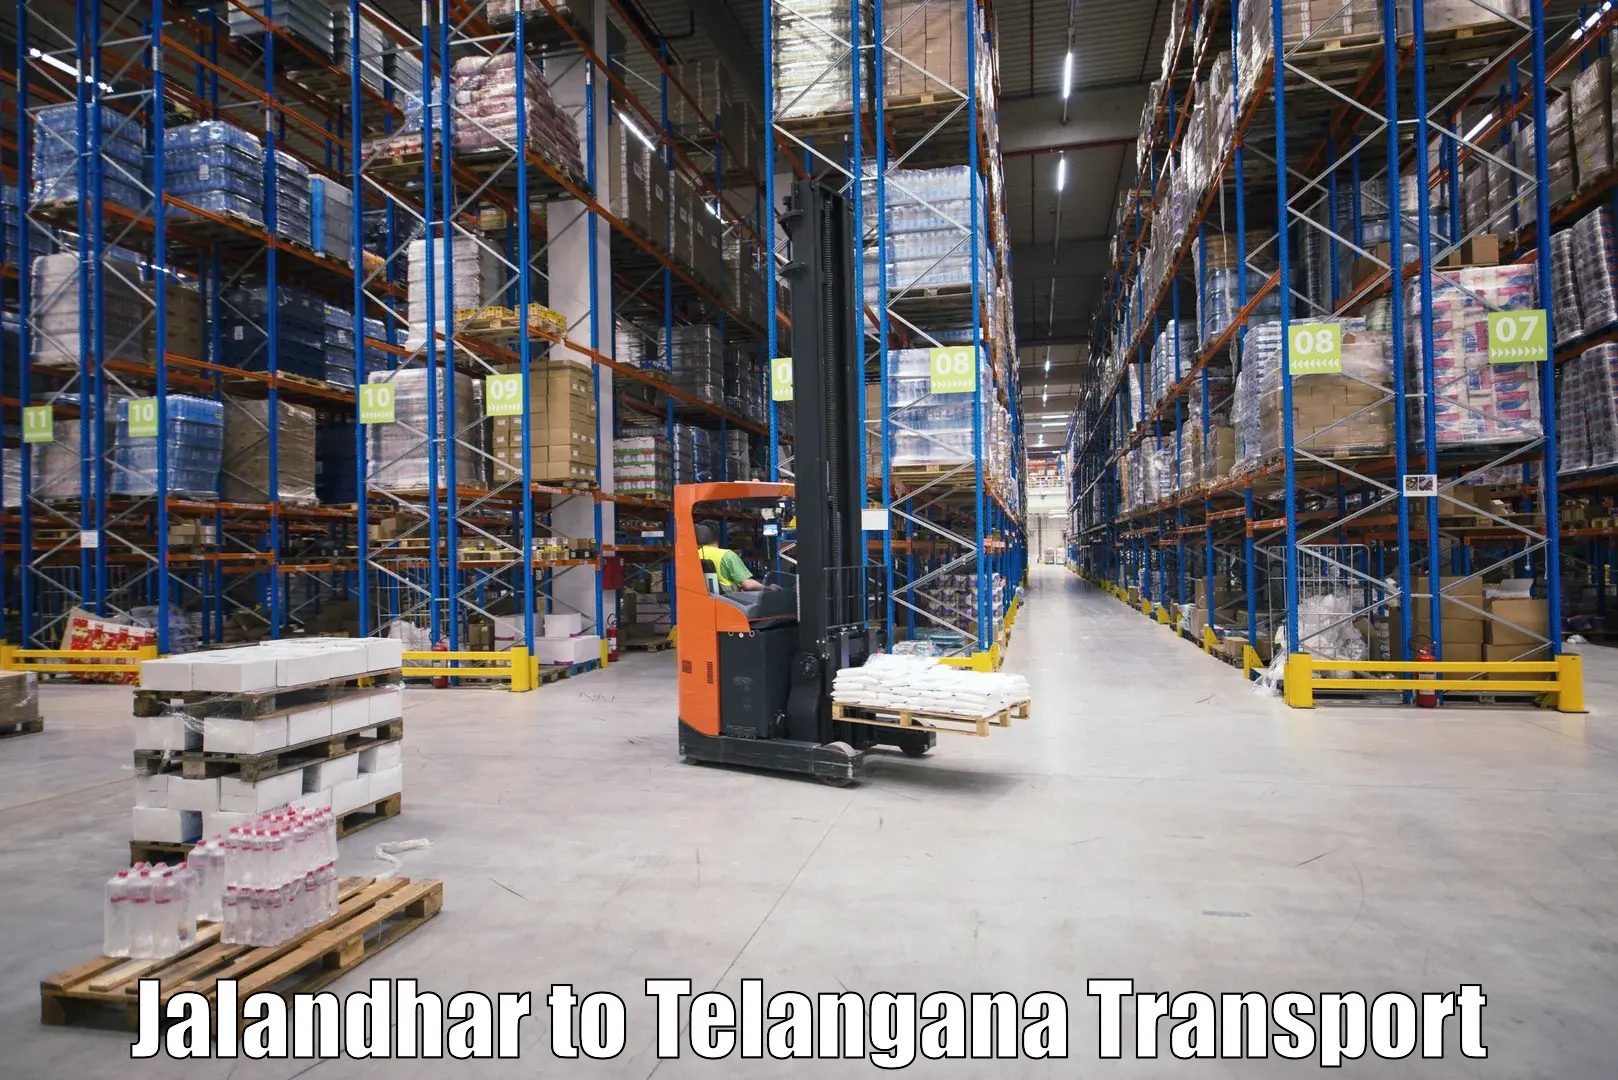 Furniture transport service Jalandhar to Kodad